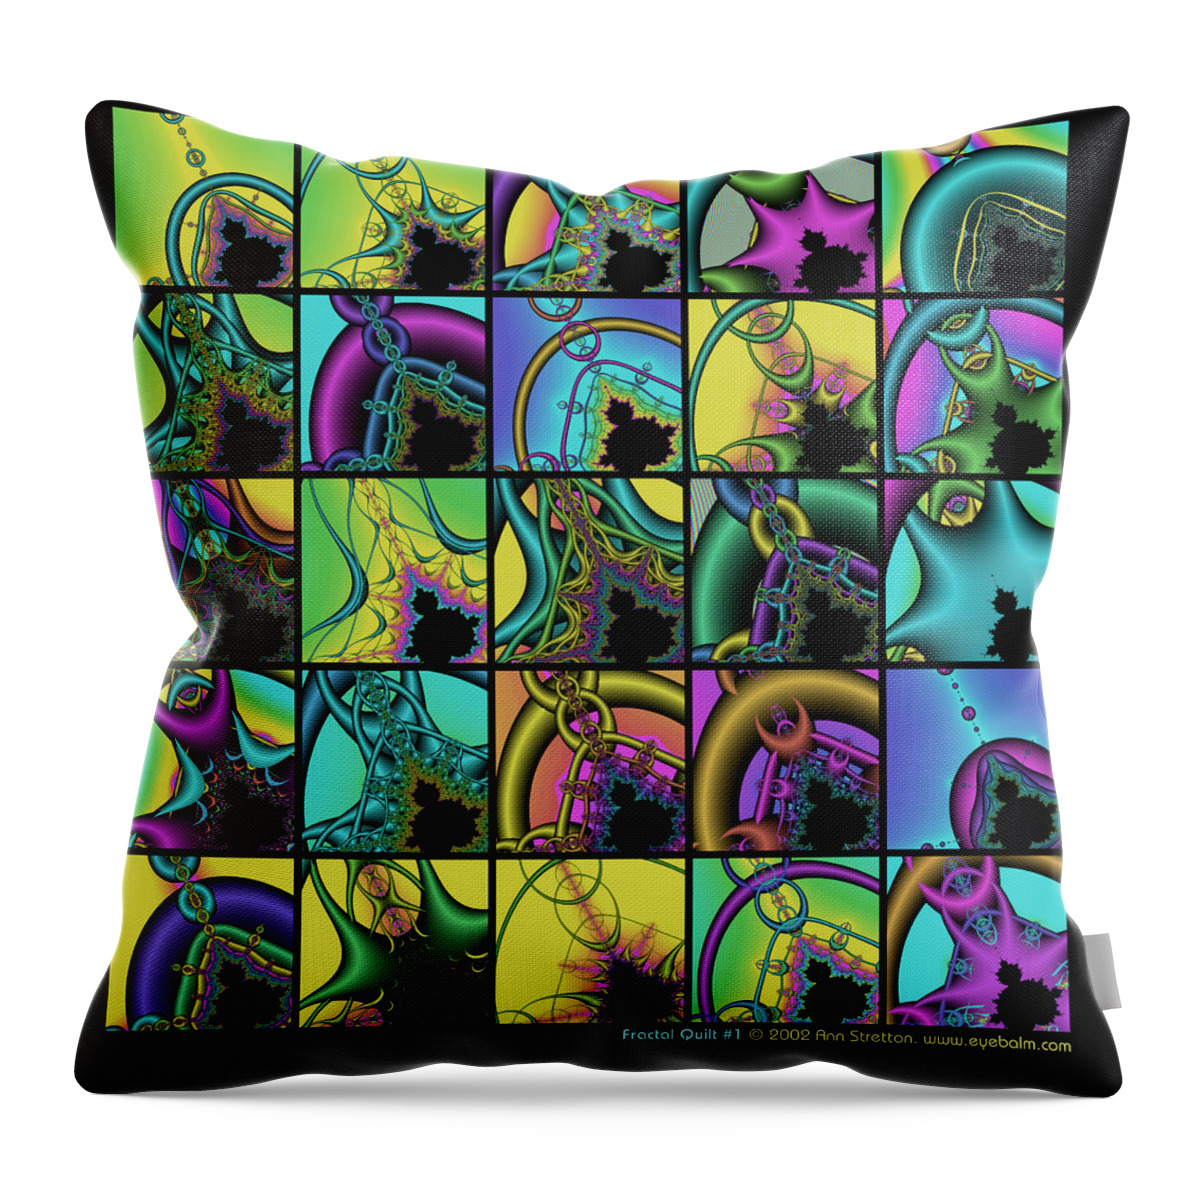 Green Throw Pillow featuring the digital art Fractal Quilt 1 by Ann Stretton